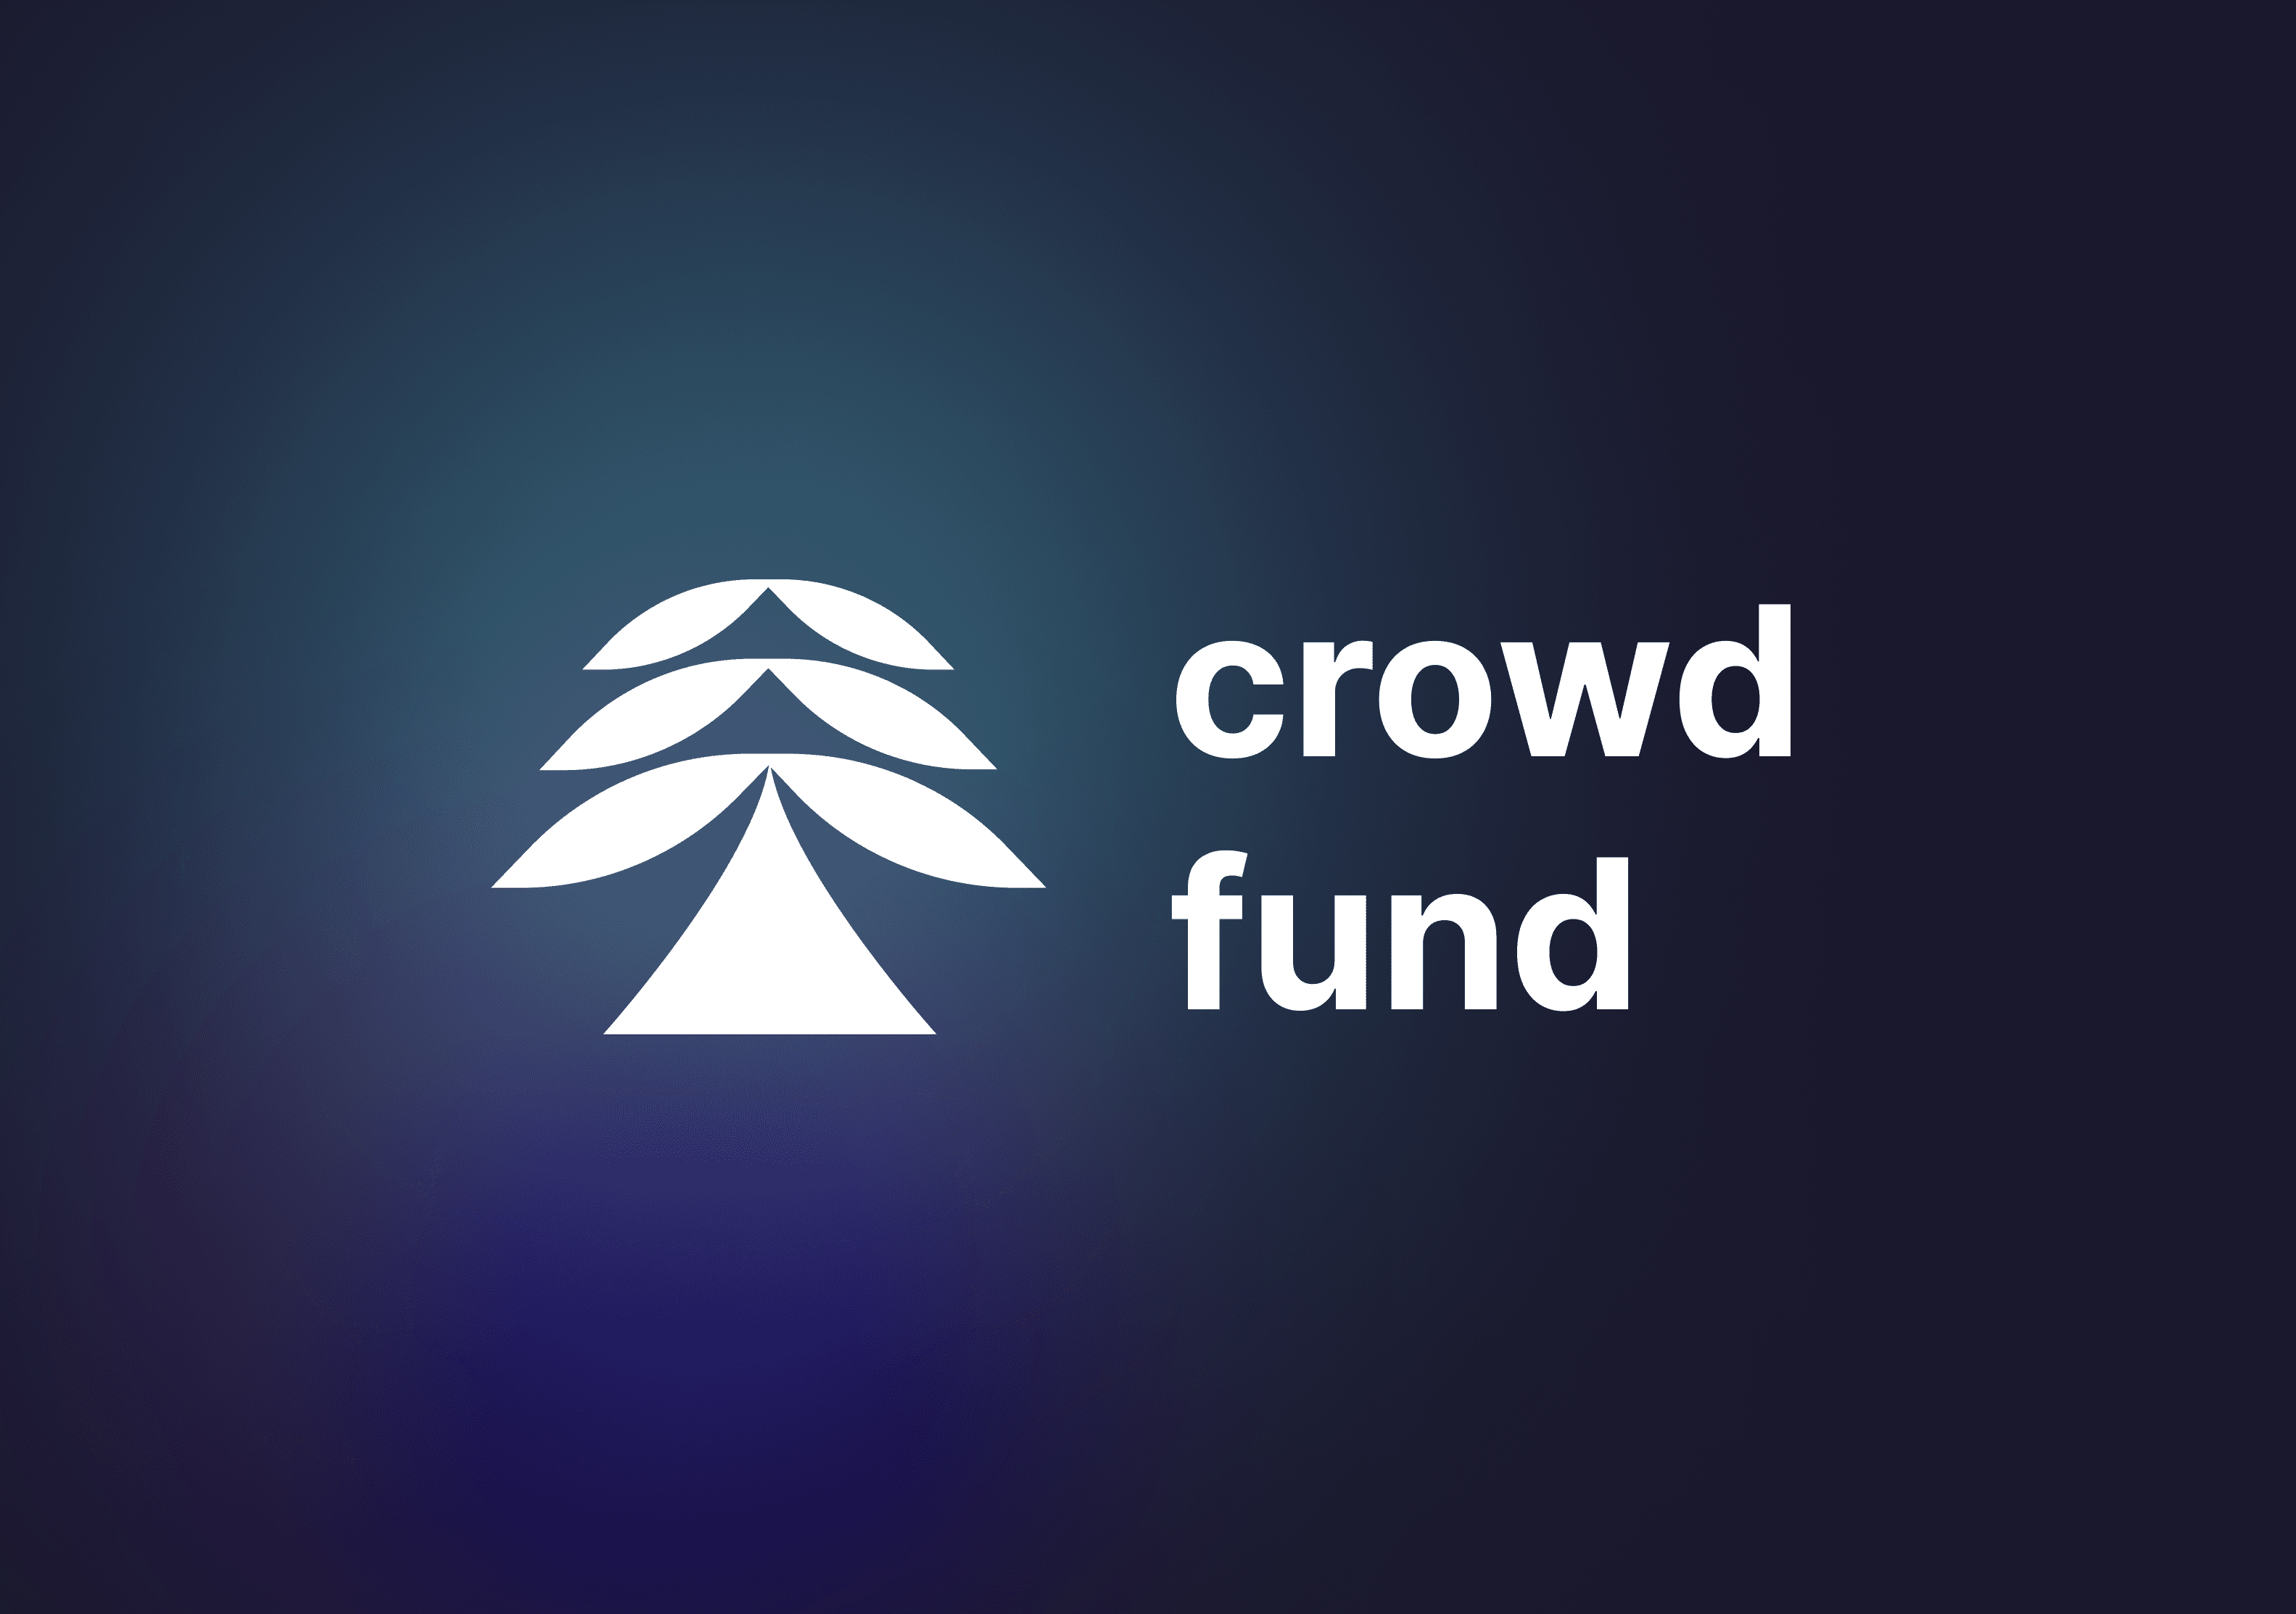 crowd fund website image